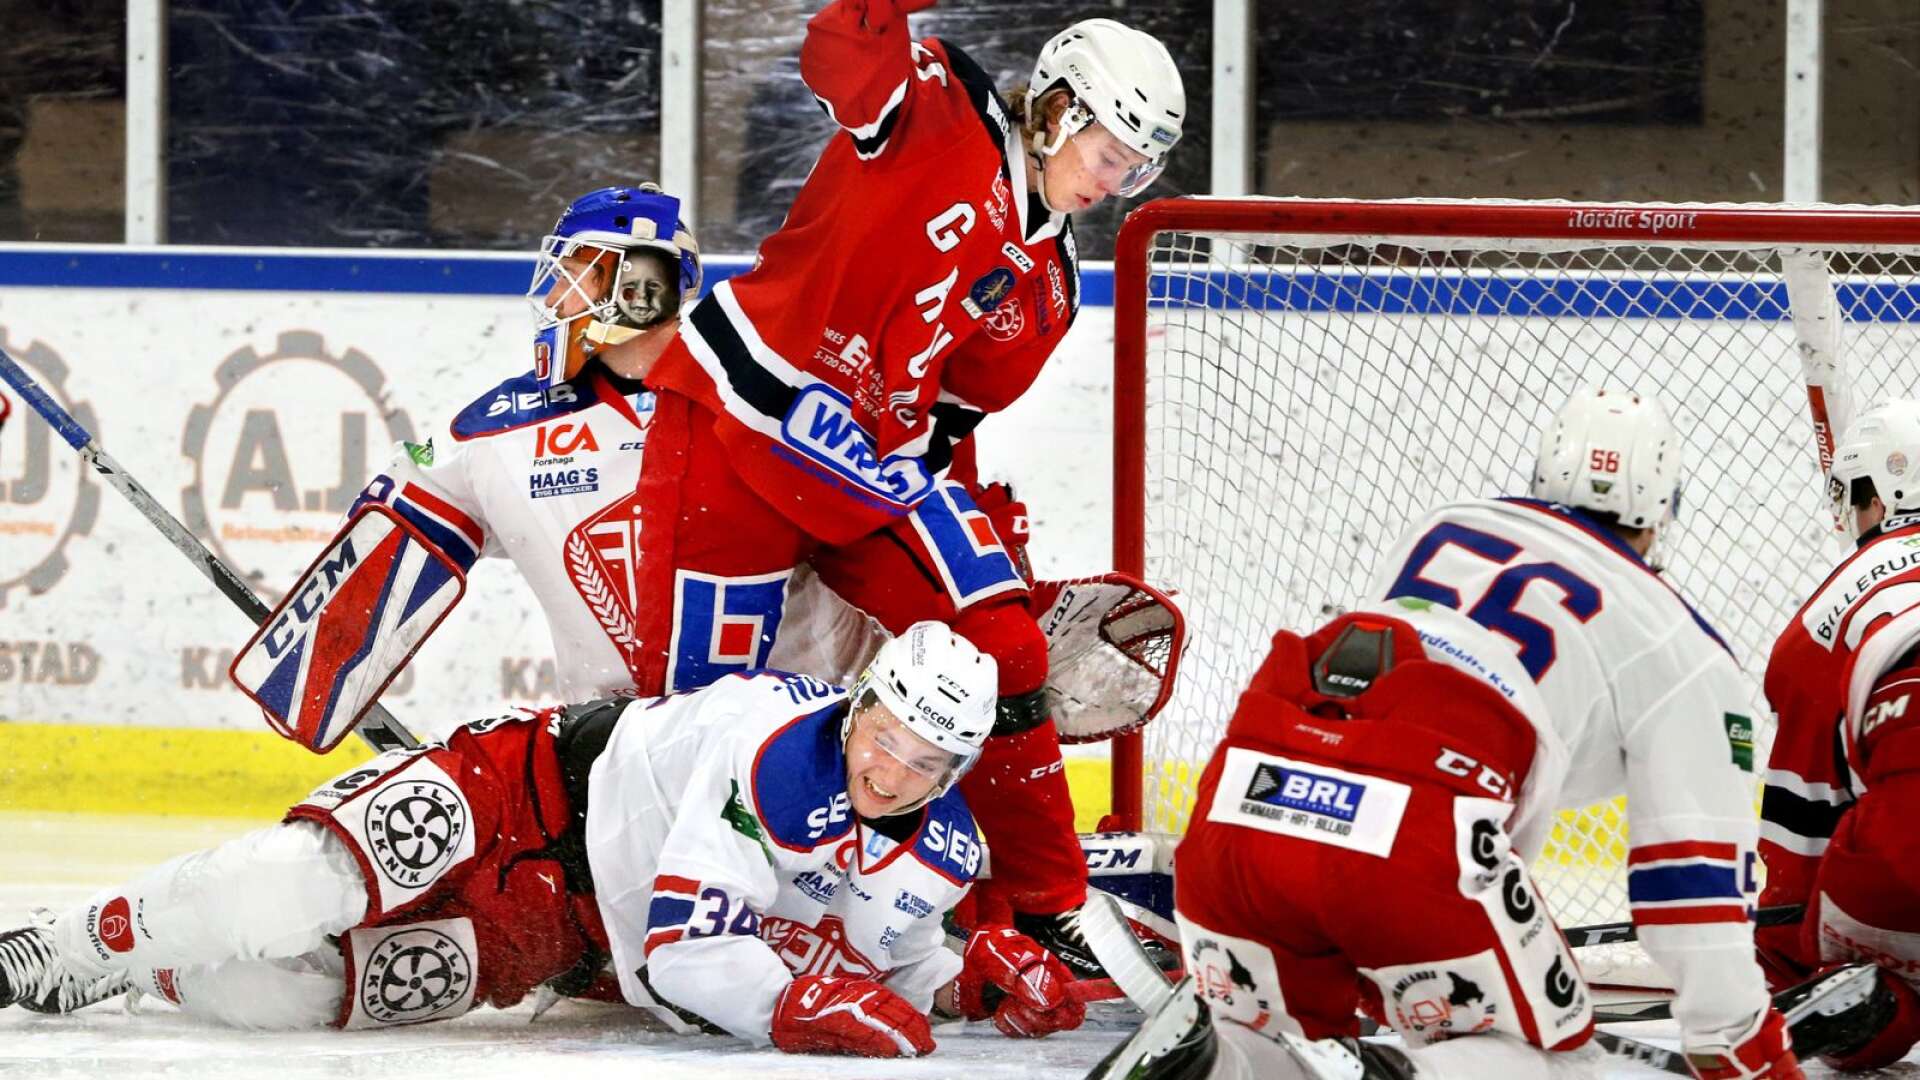 Hockeyettans två värmländska bidrag gör upp i Forshaga.
